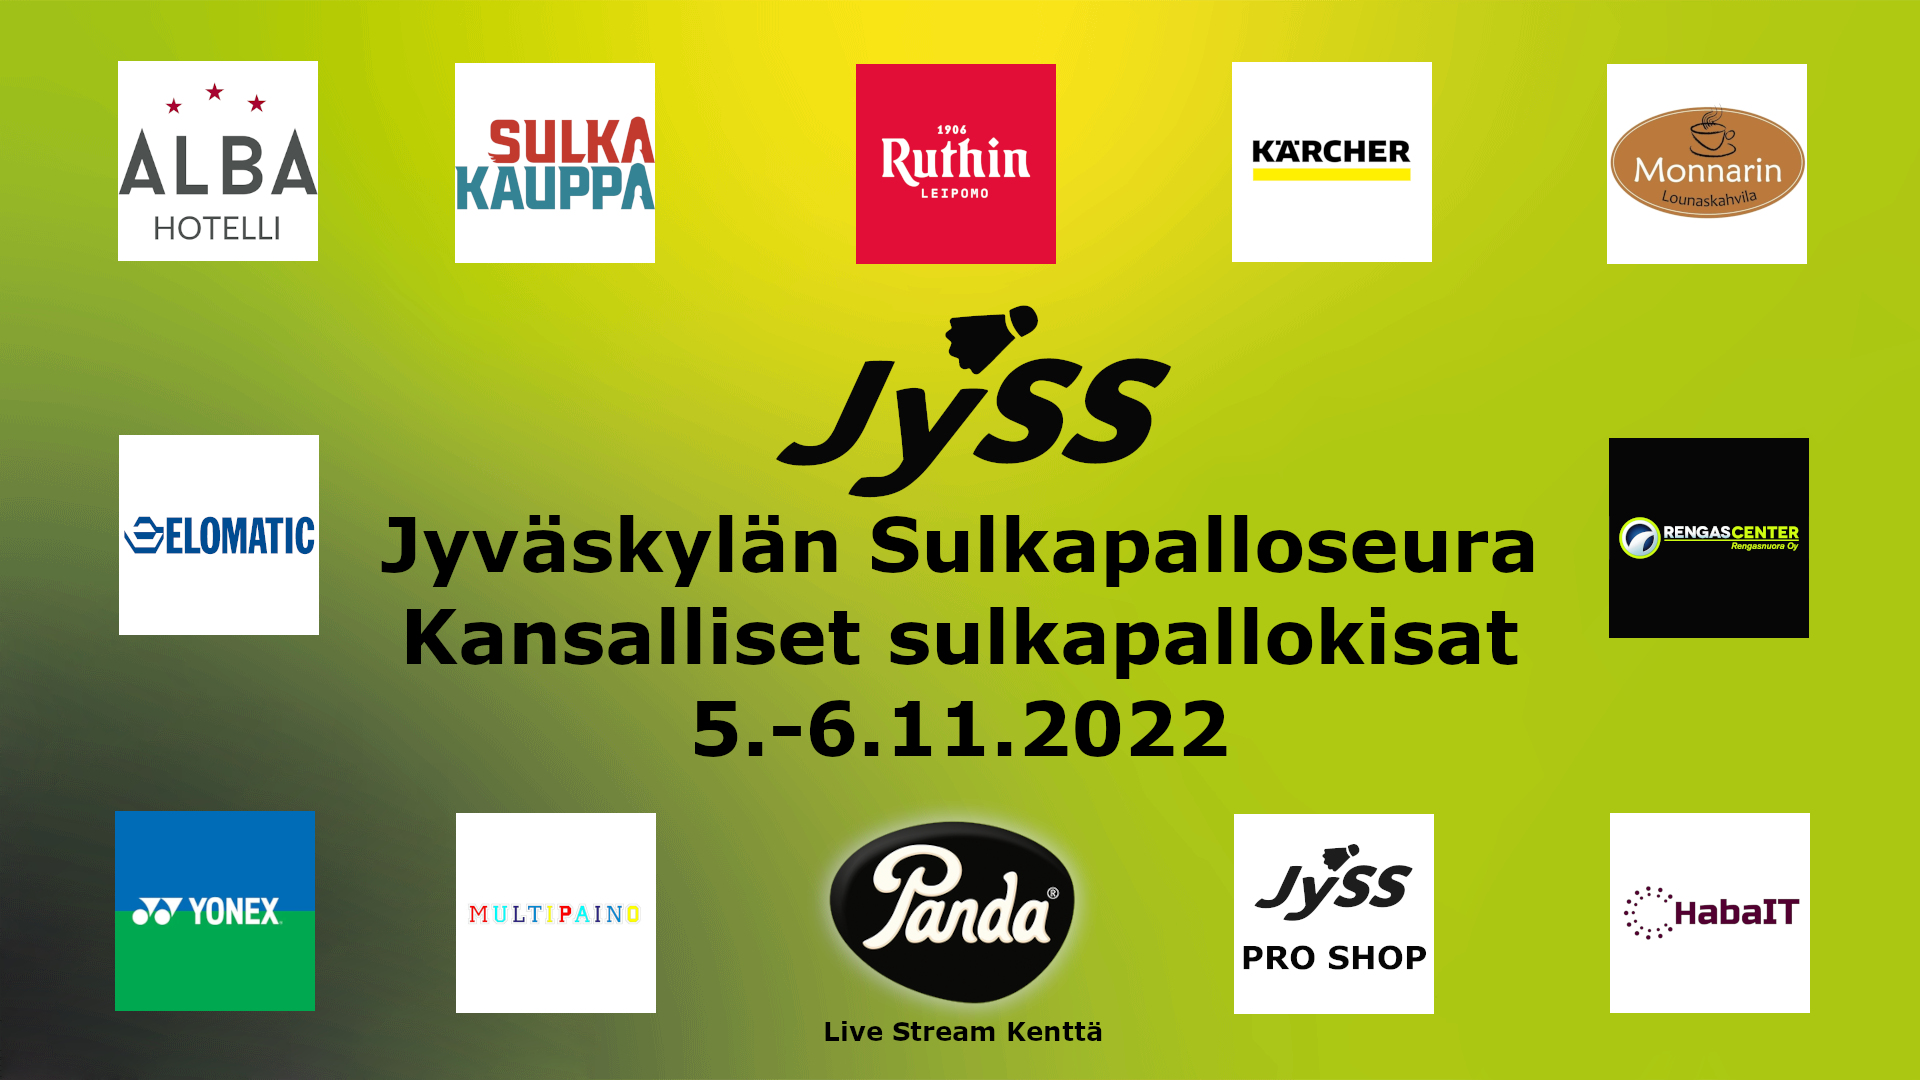 JYSS_livestream_kansalliset_5.-6.11.2022_sponsorit.jpg